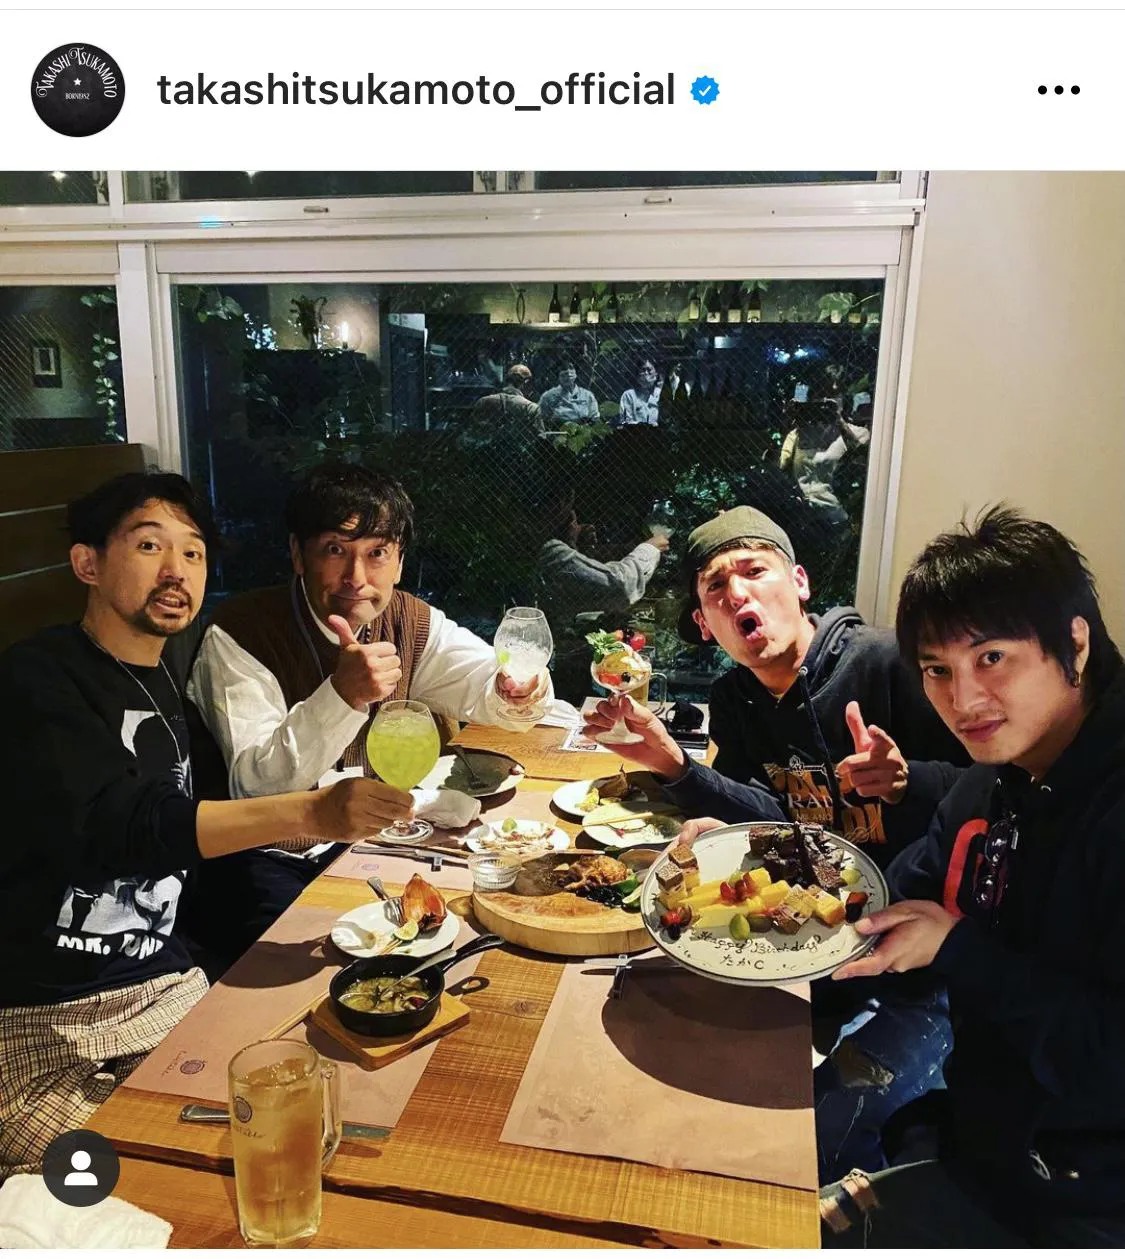 ※塚本高史公式Instagram(takashitsukamoto_official)のスクリーンショット